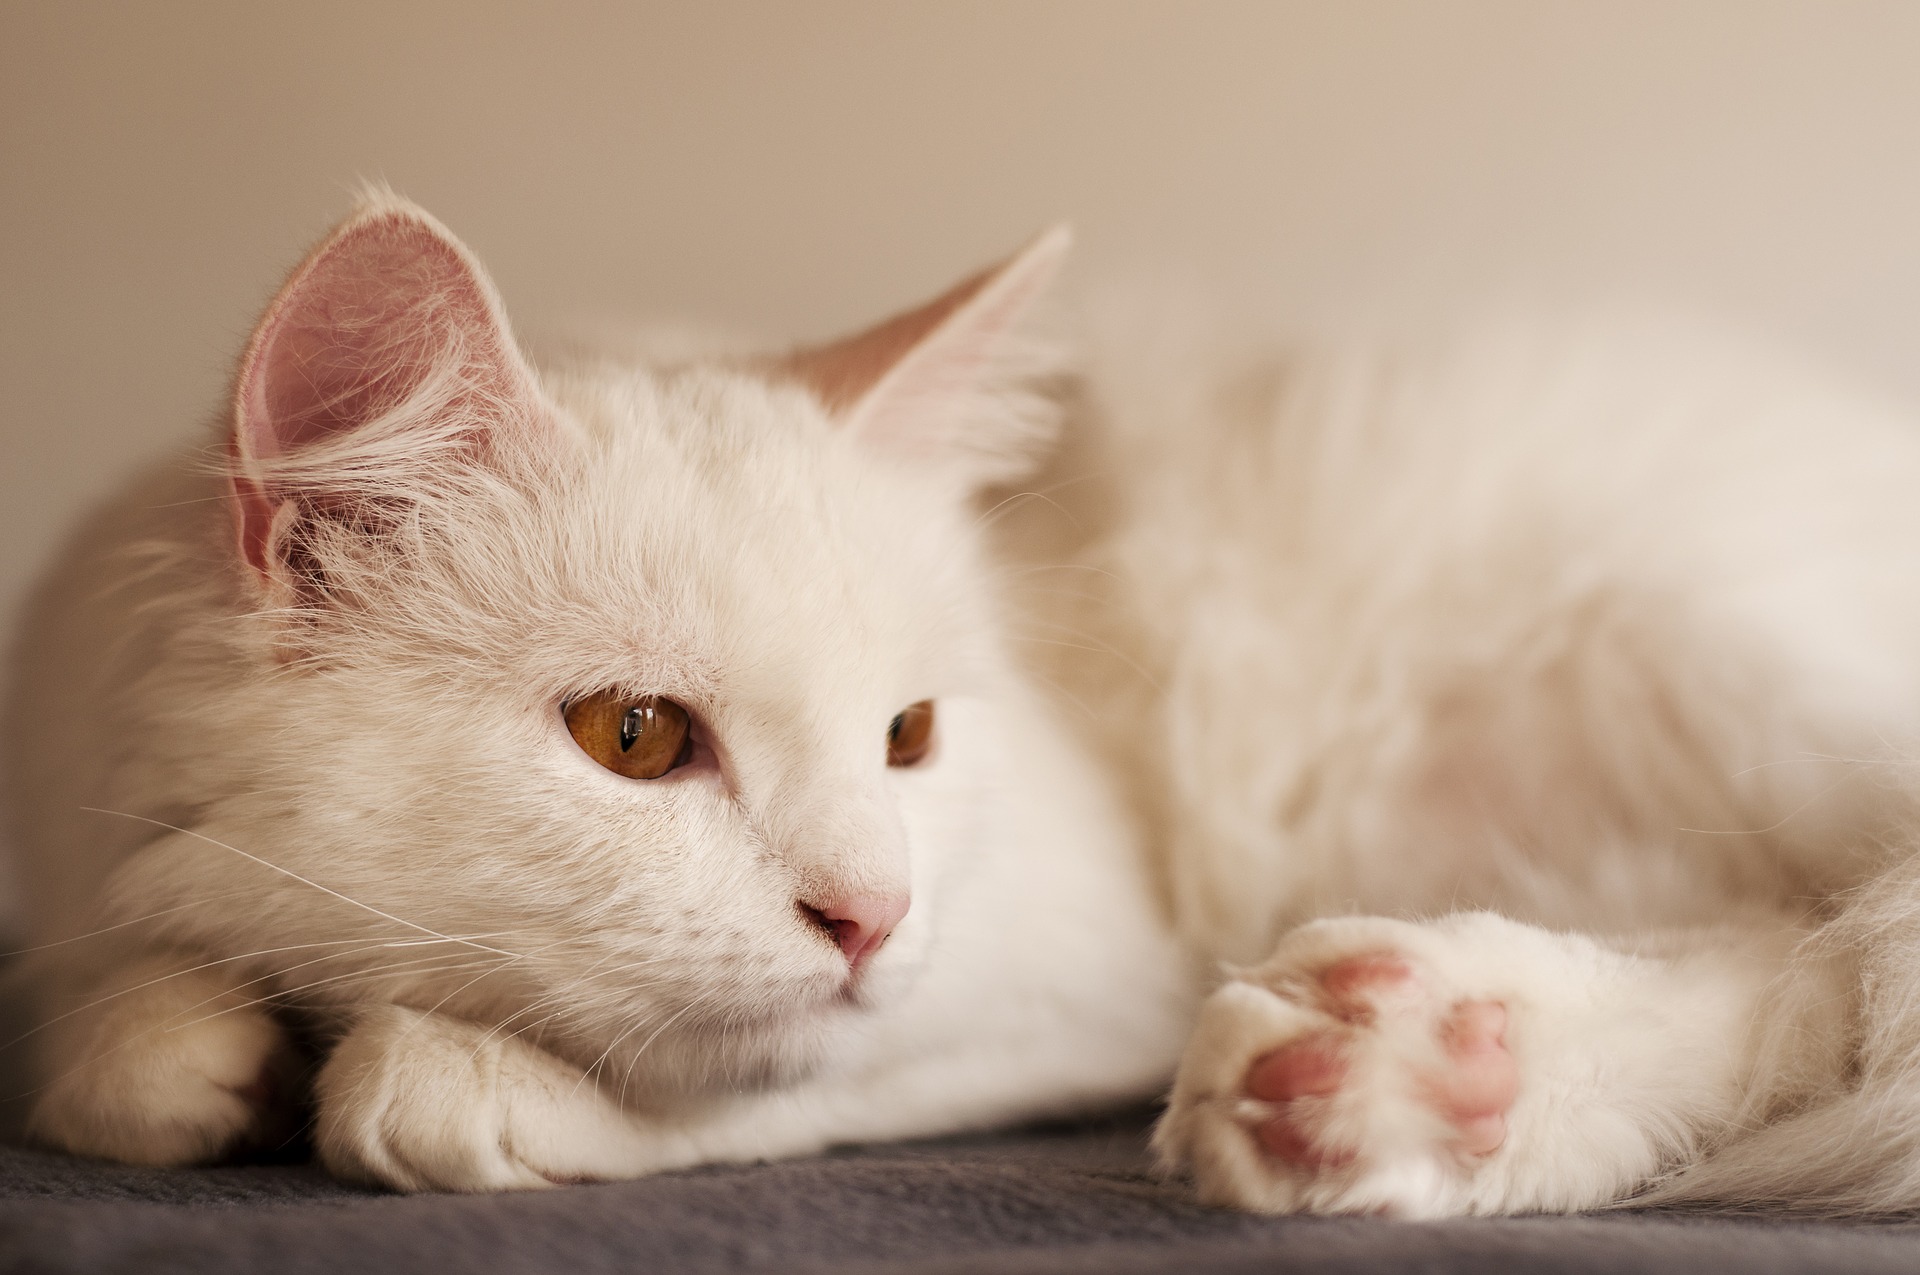 Turecká angorská kočka má krásnou, hedvábnou a jemnou srst. Mělo by se pravidelně česat, nejlépe hřebenem s úzkými zuby.